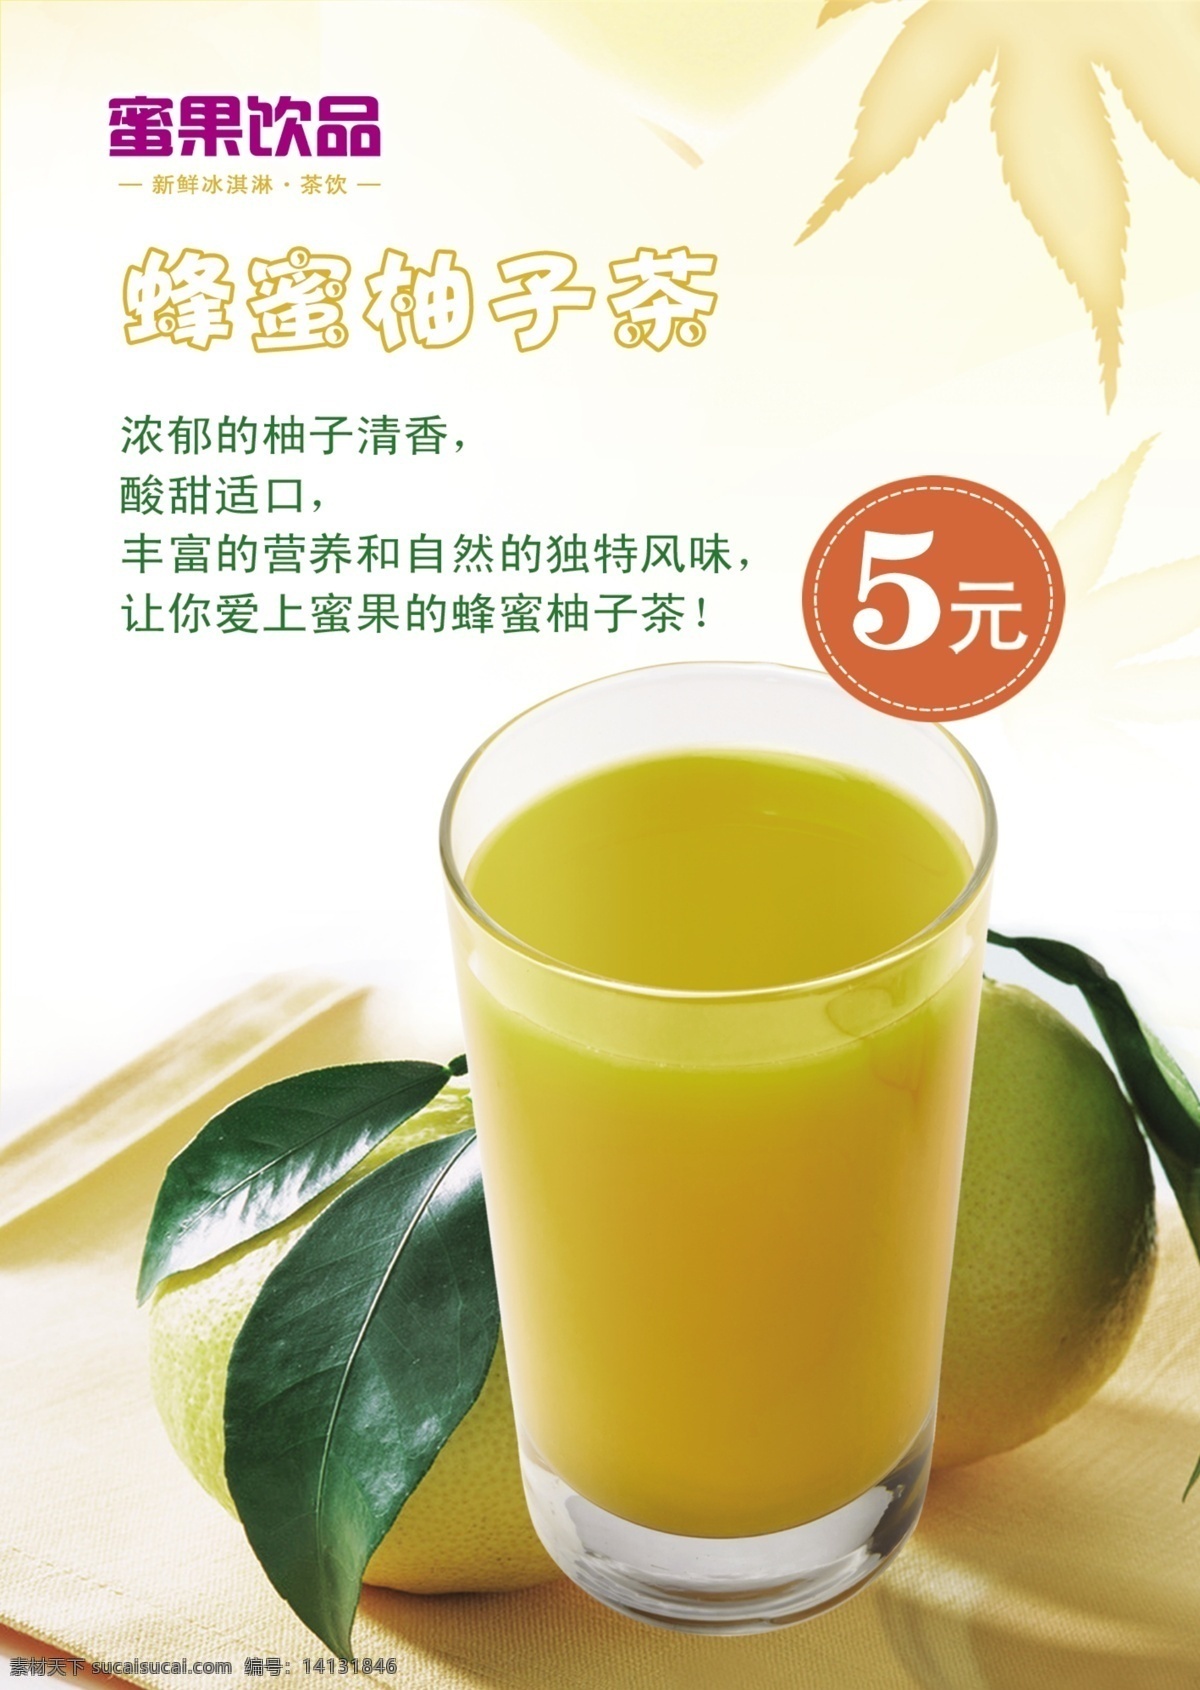 蜂蜜柚子茶 蜜果饮品 5元 浓郁 柚子清香